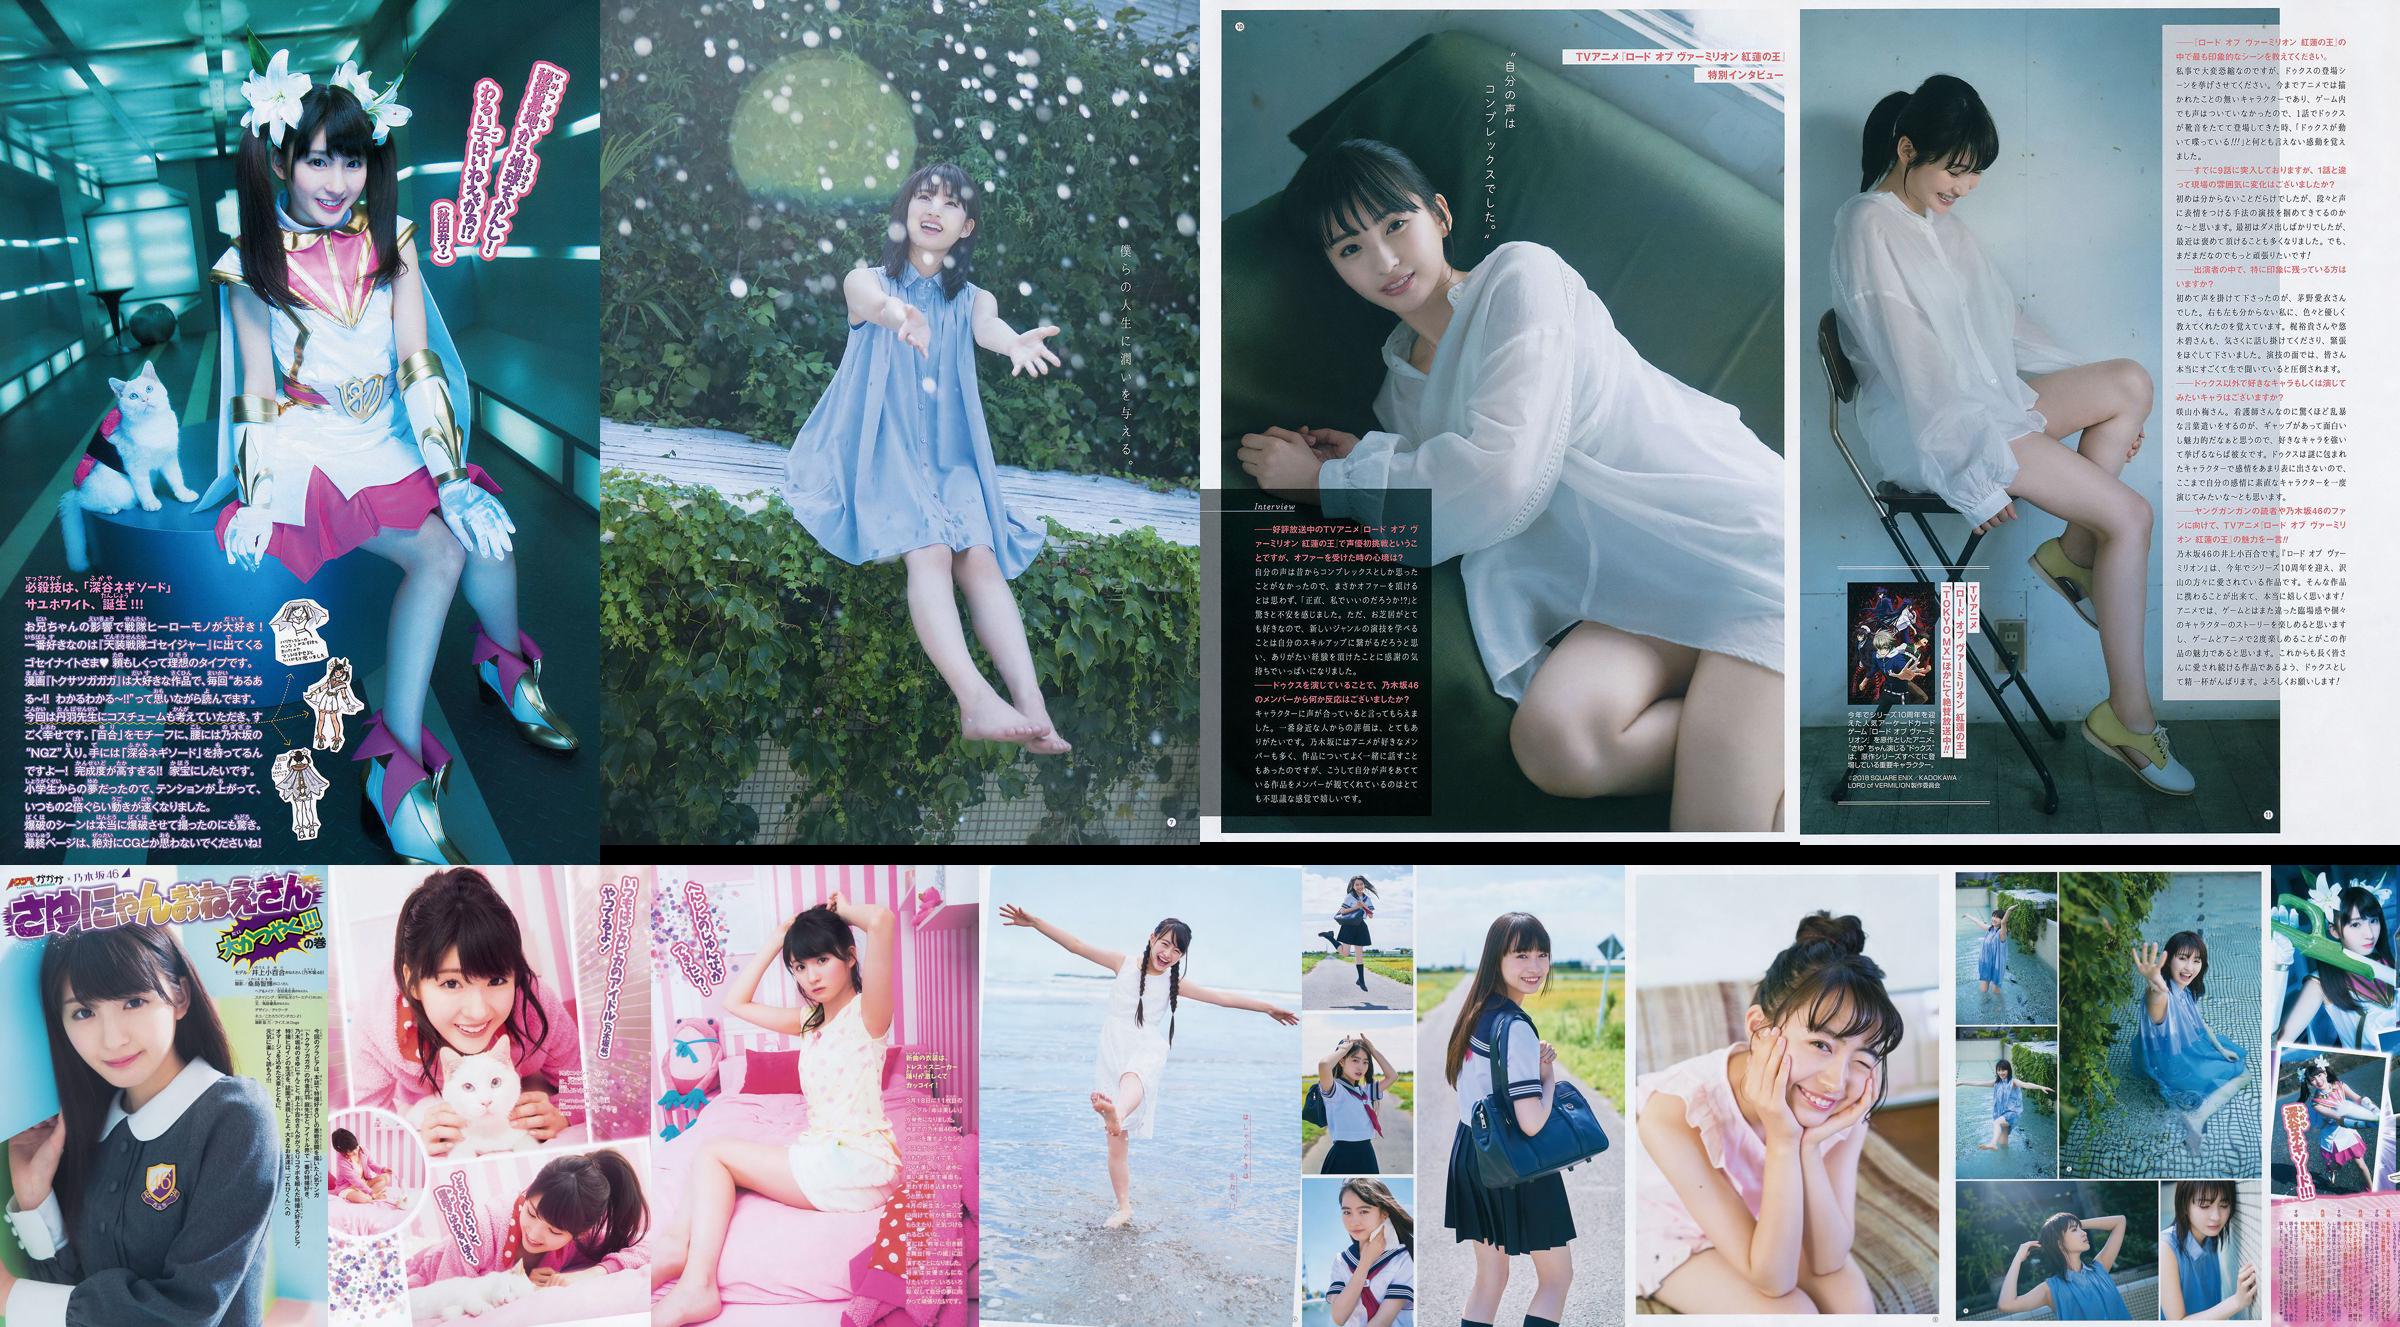 [Young Gangan] Sayuri Inoue Su arena original 2018 No.18 Photo Magazine No.d40215 Página 1